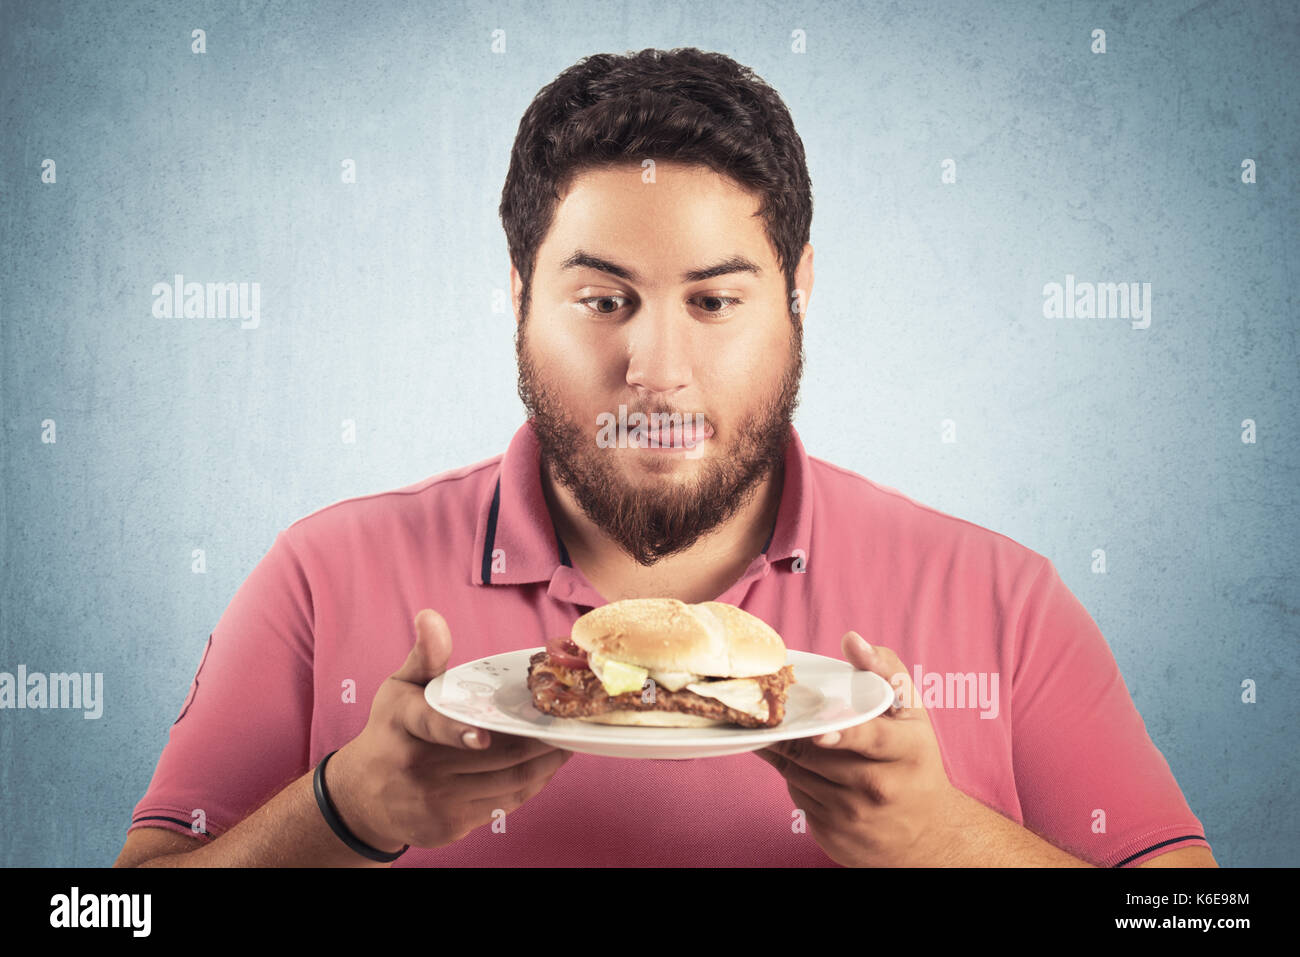 fat and hungry man looking a hamburger Stock Photo